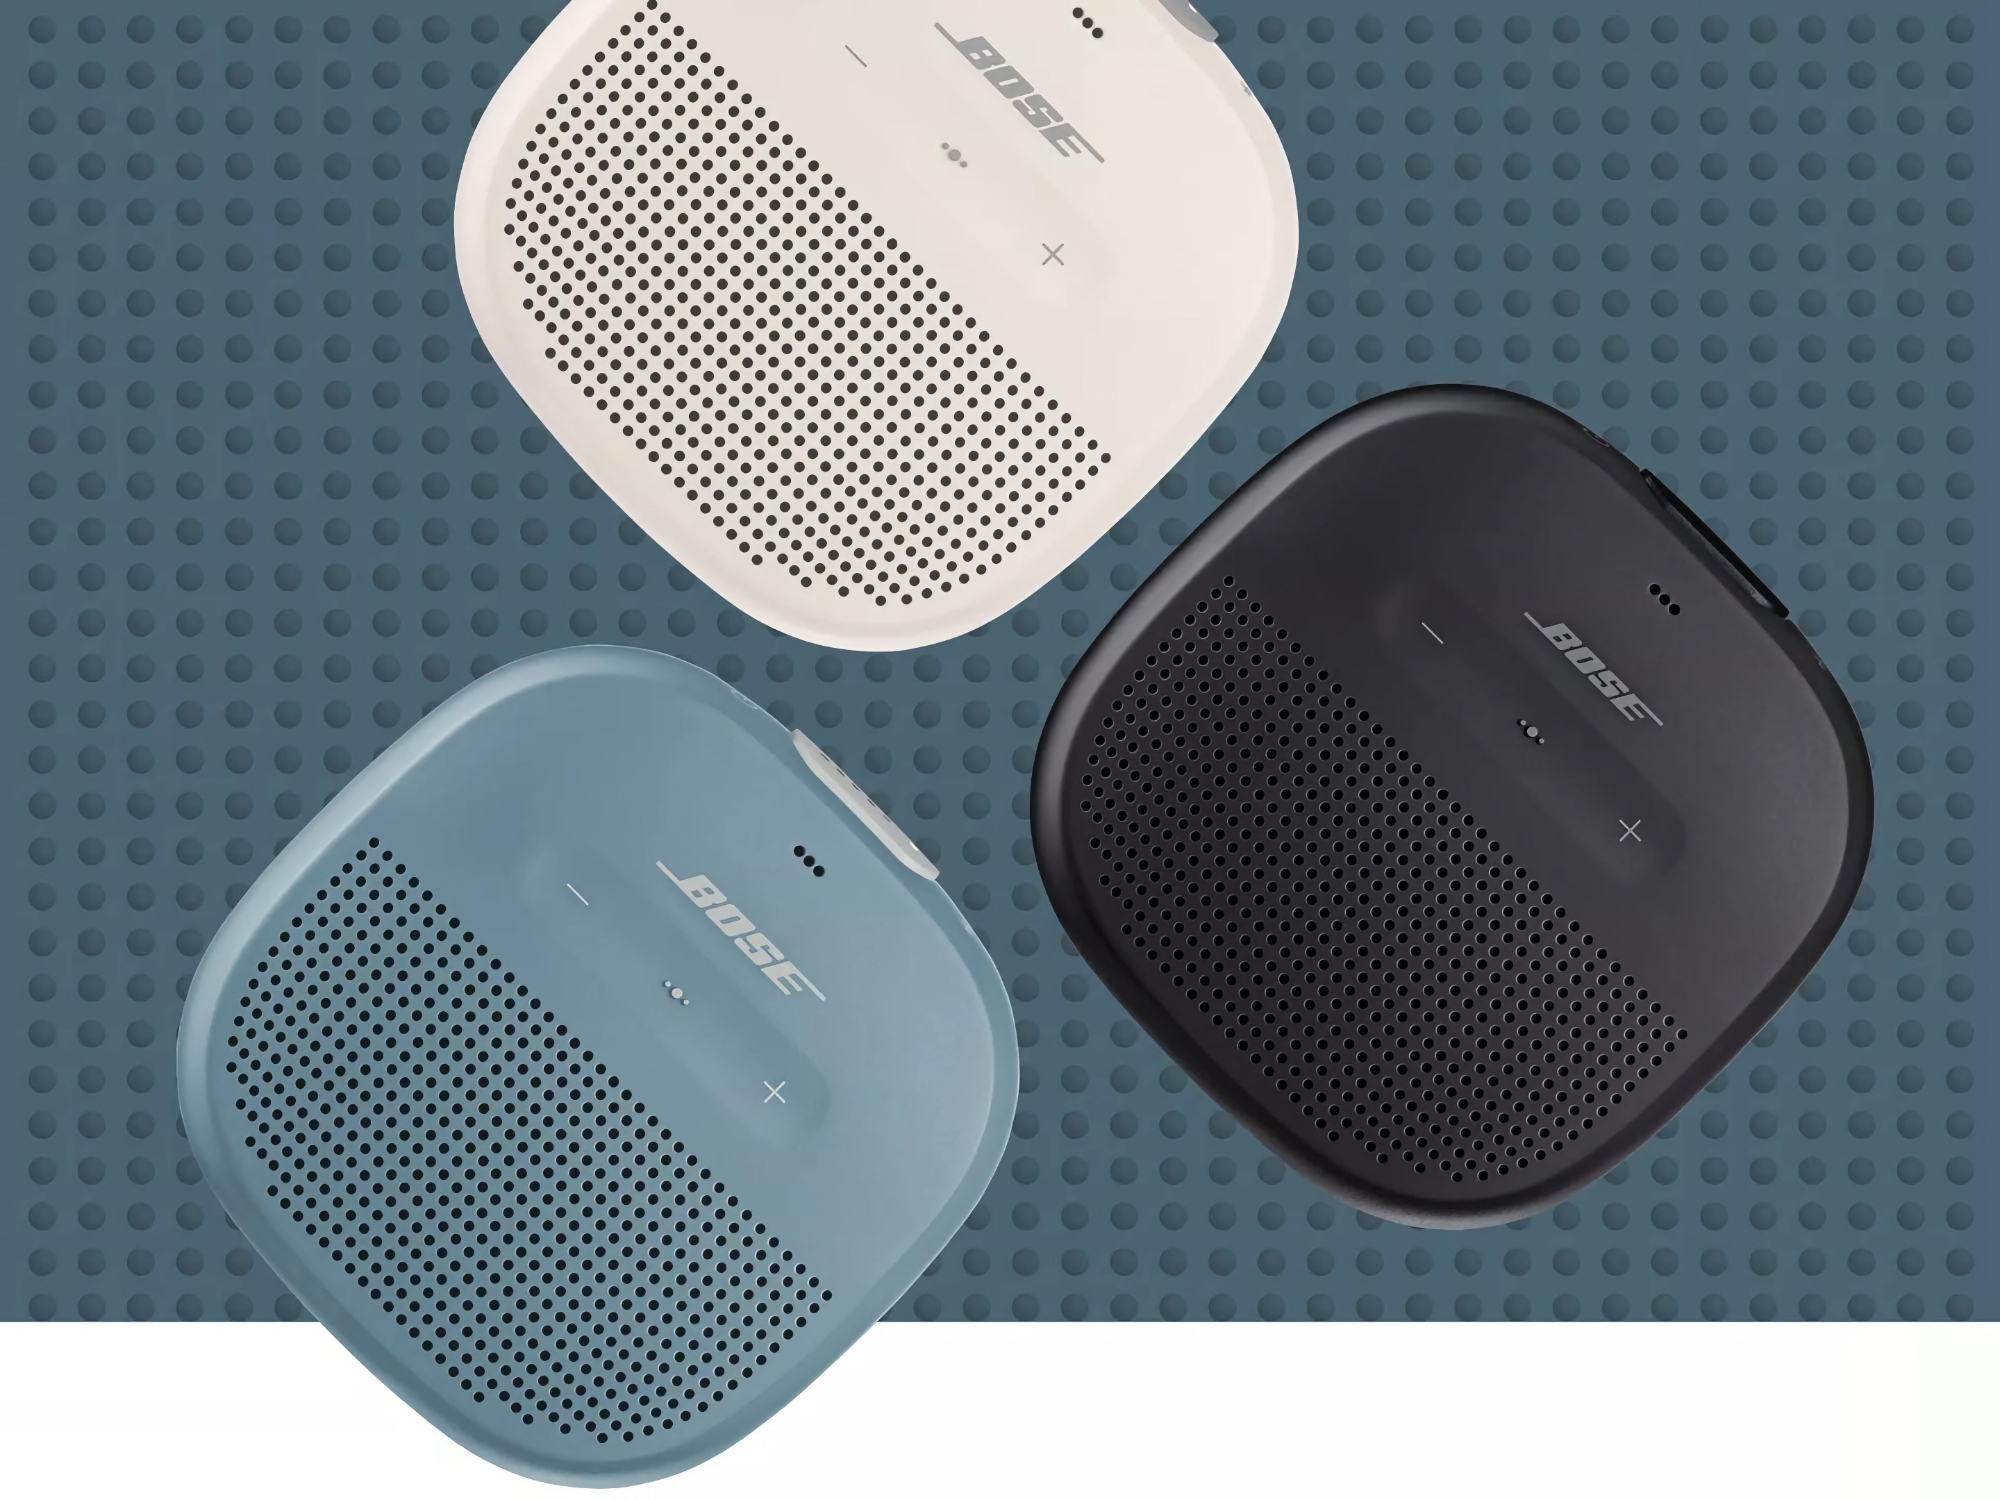 Réduction de 20 $ : La Bose SoundLink Micro peut être achetée sur Amazon pour 99 $.